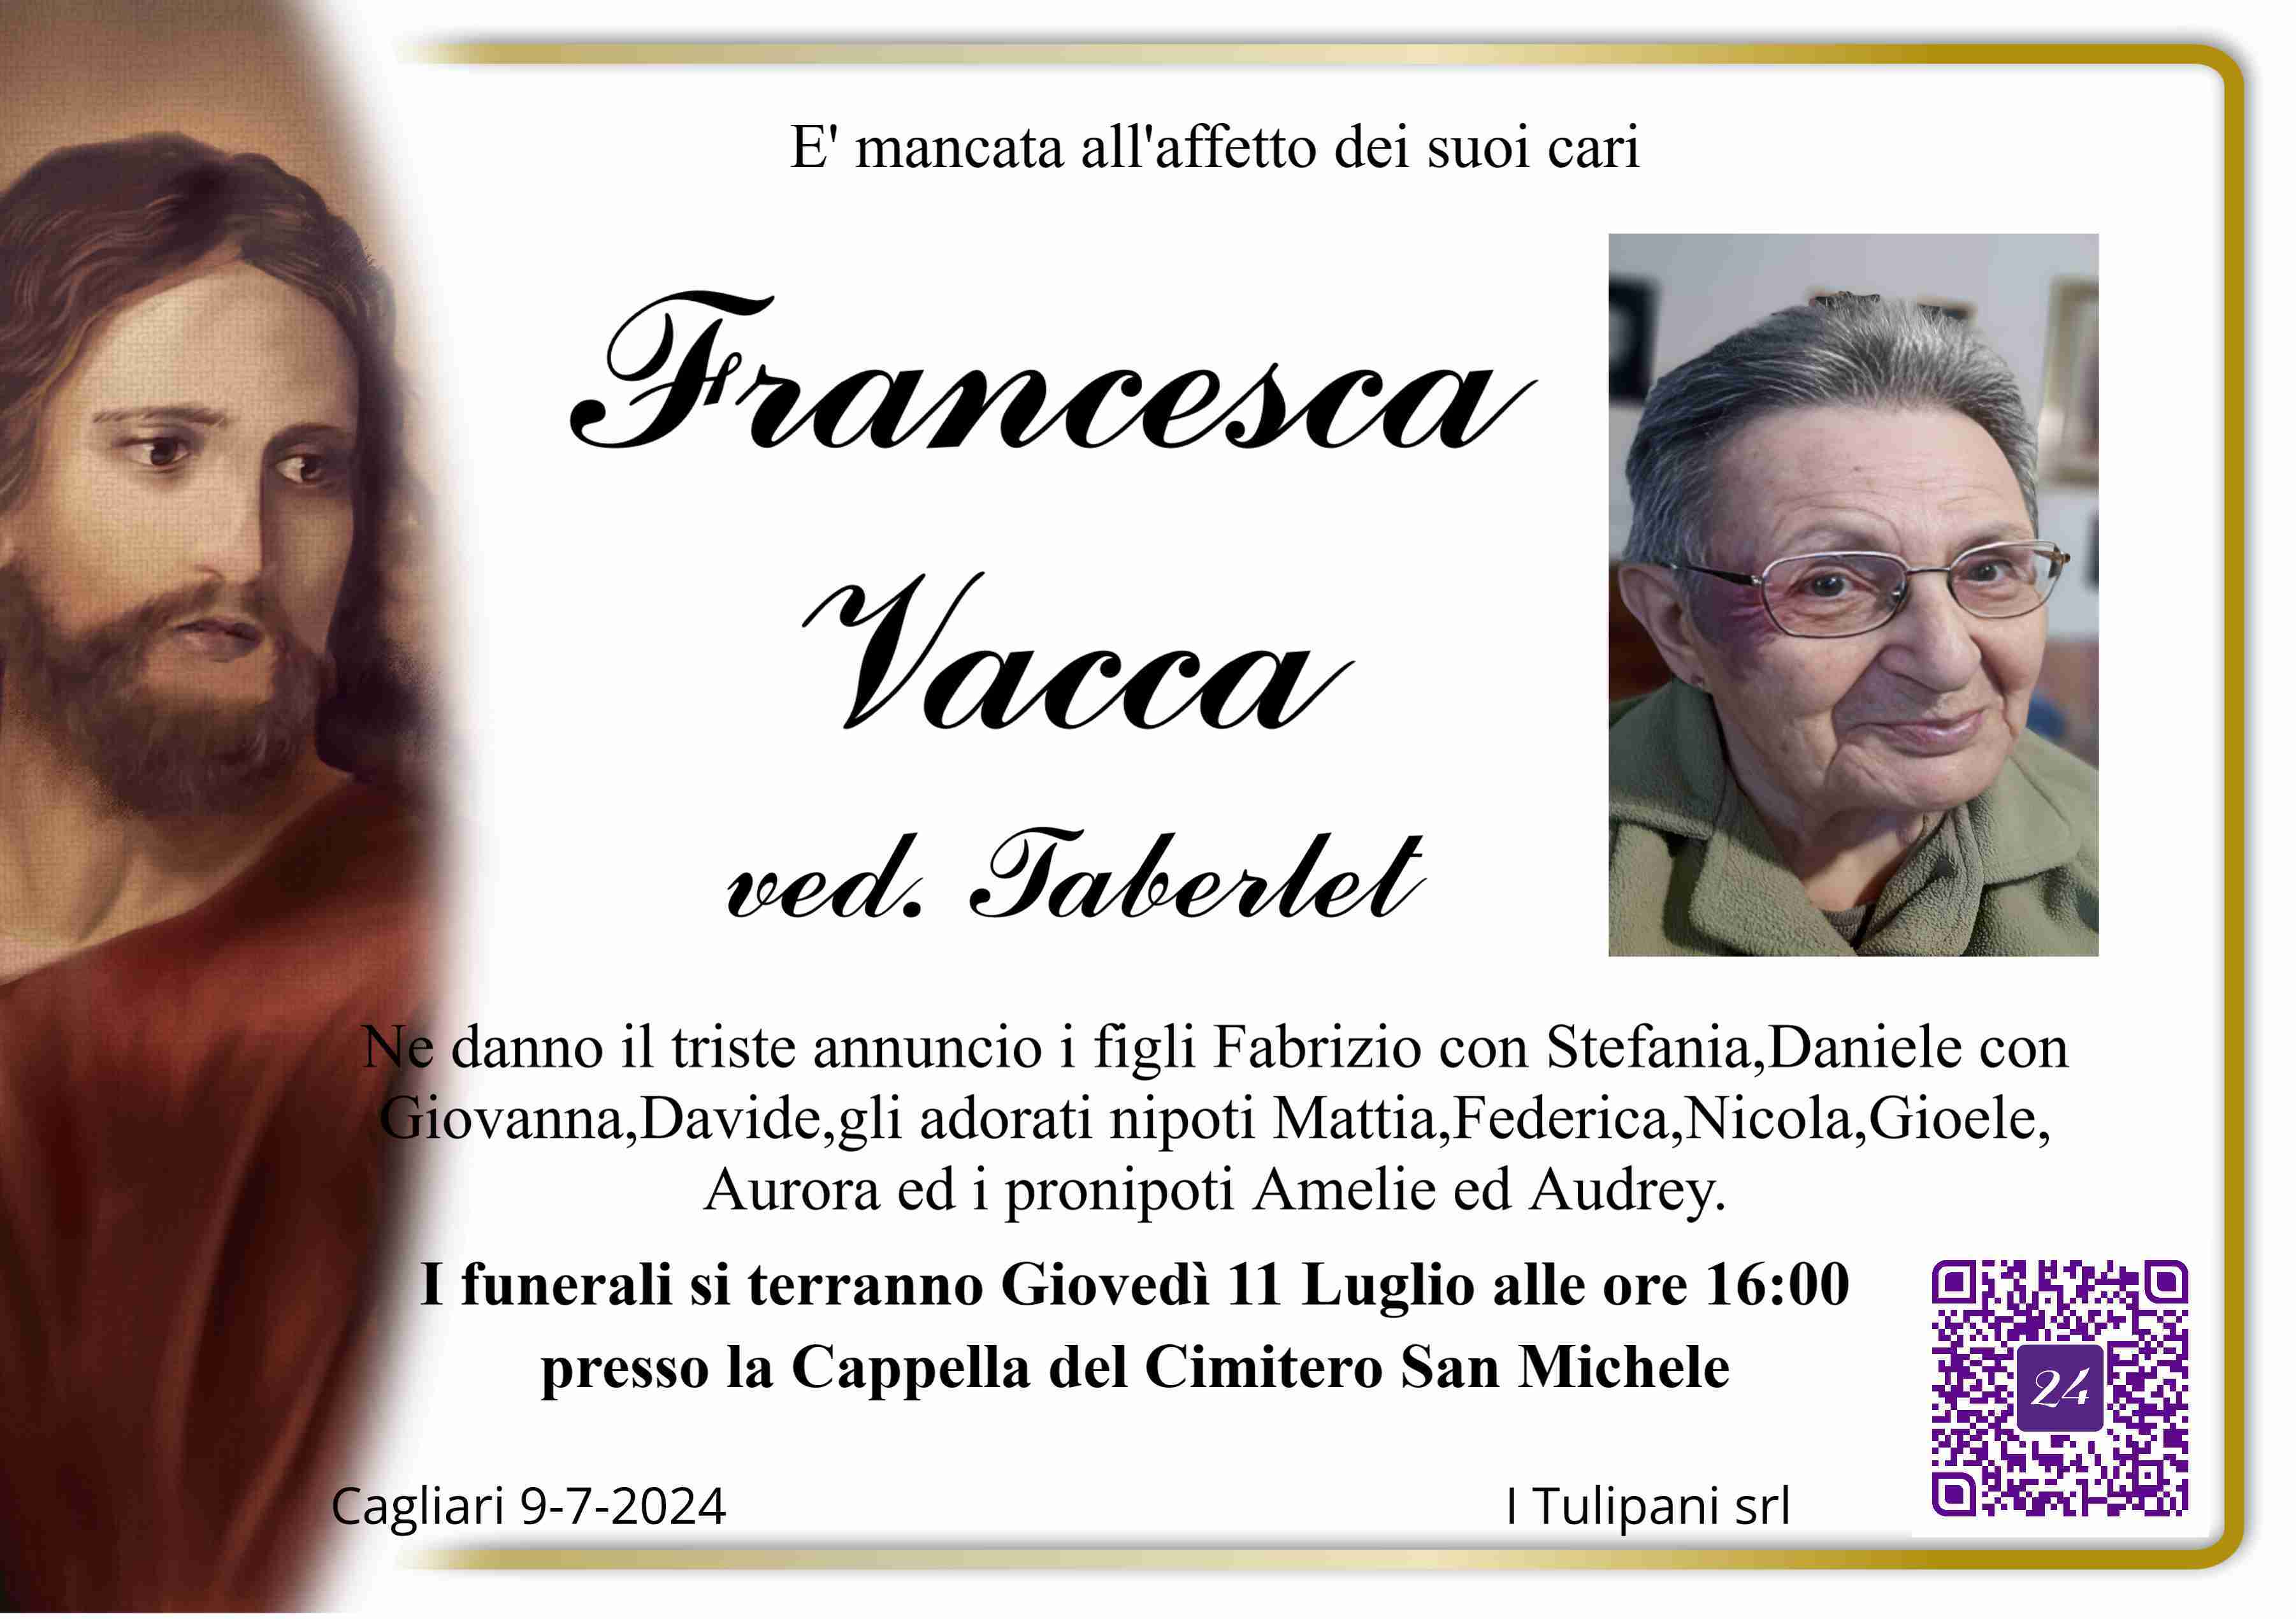 Francesca Vacca